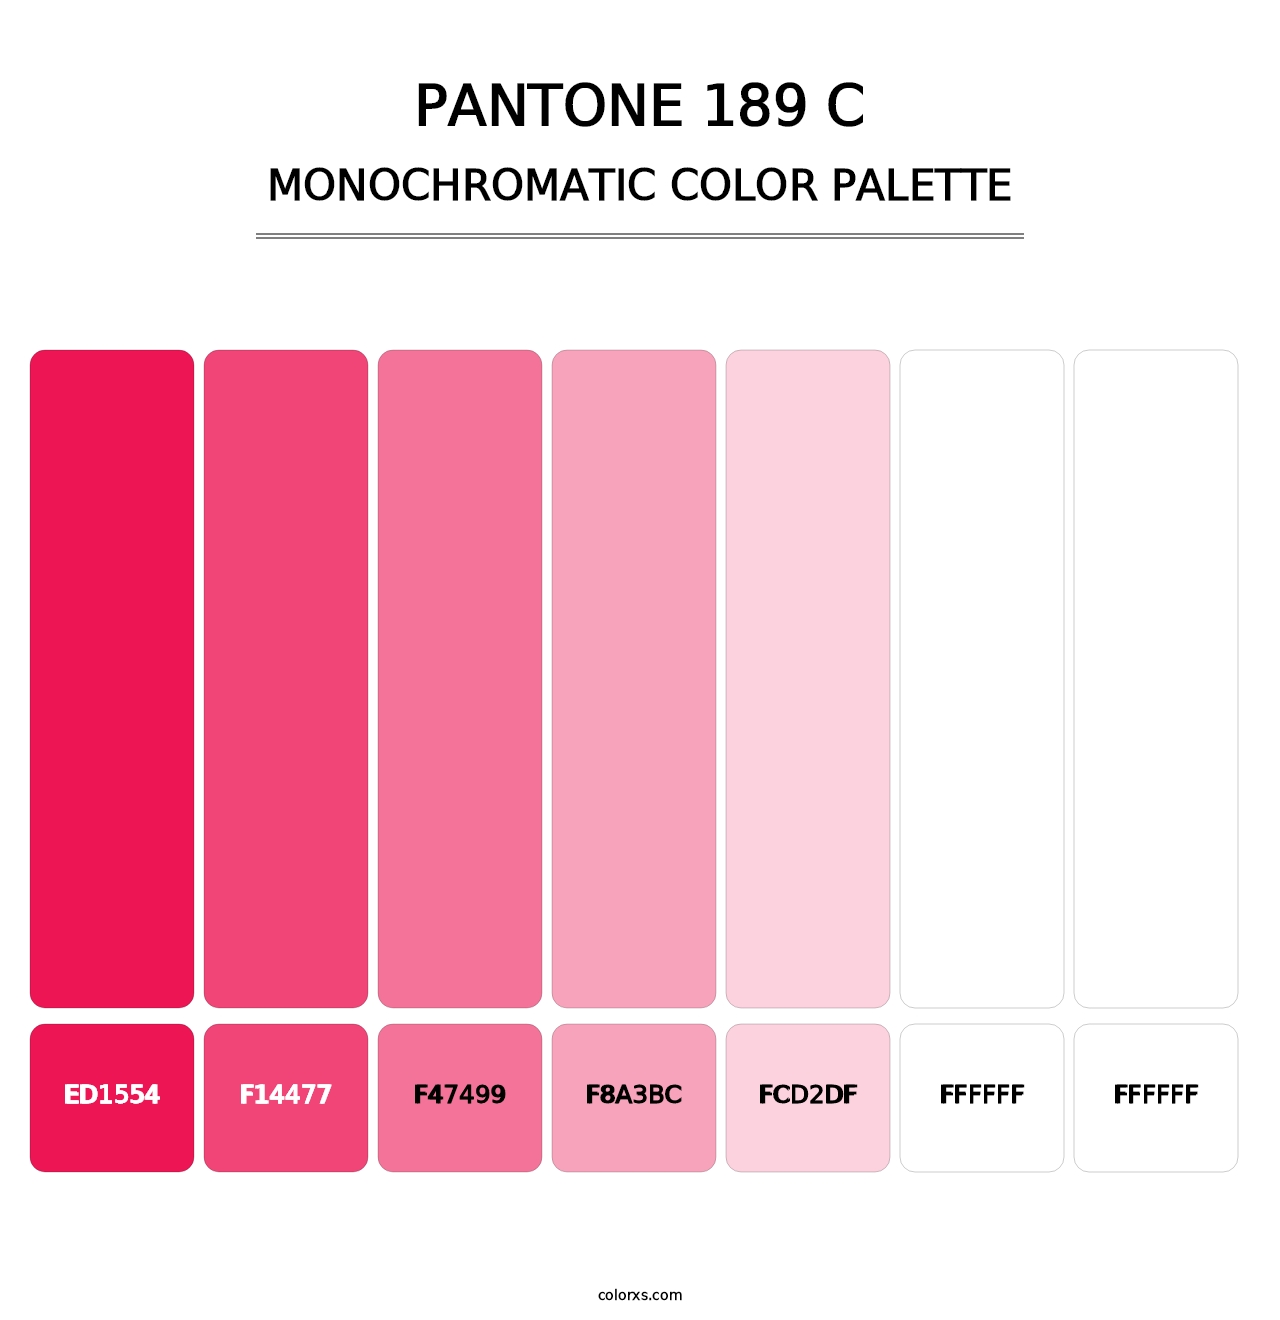 PANTONE 189 C - Monochromatic Color Palette